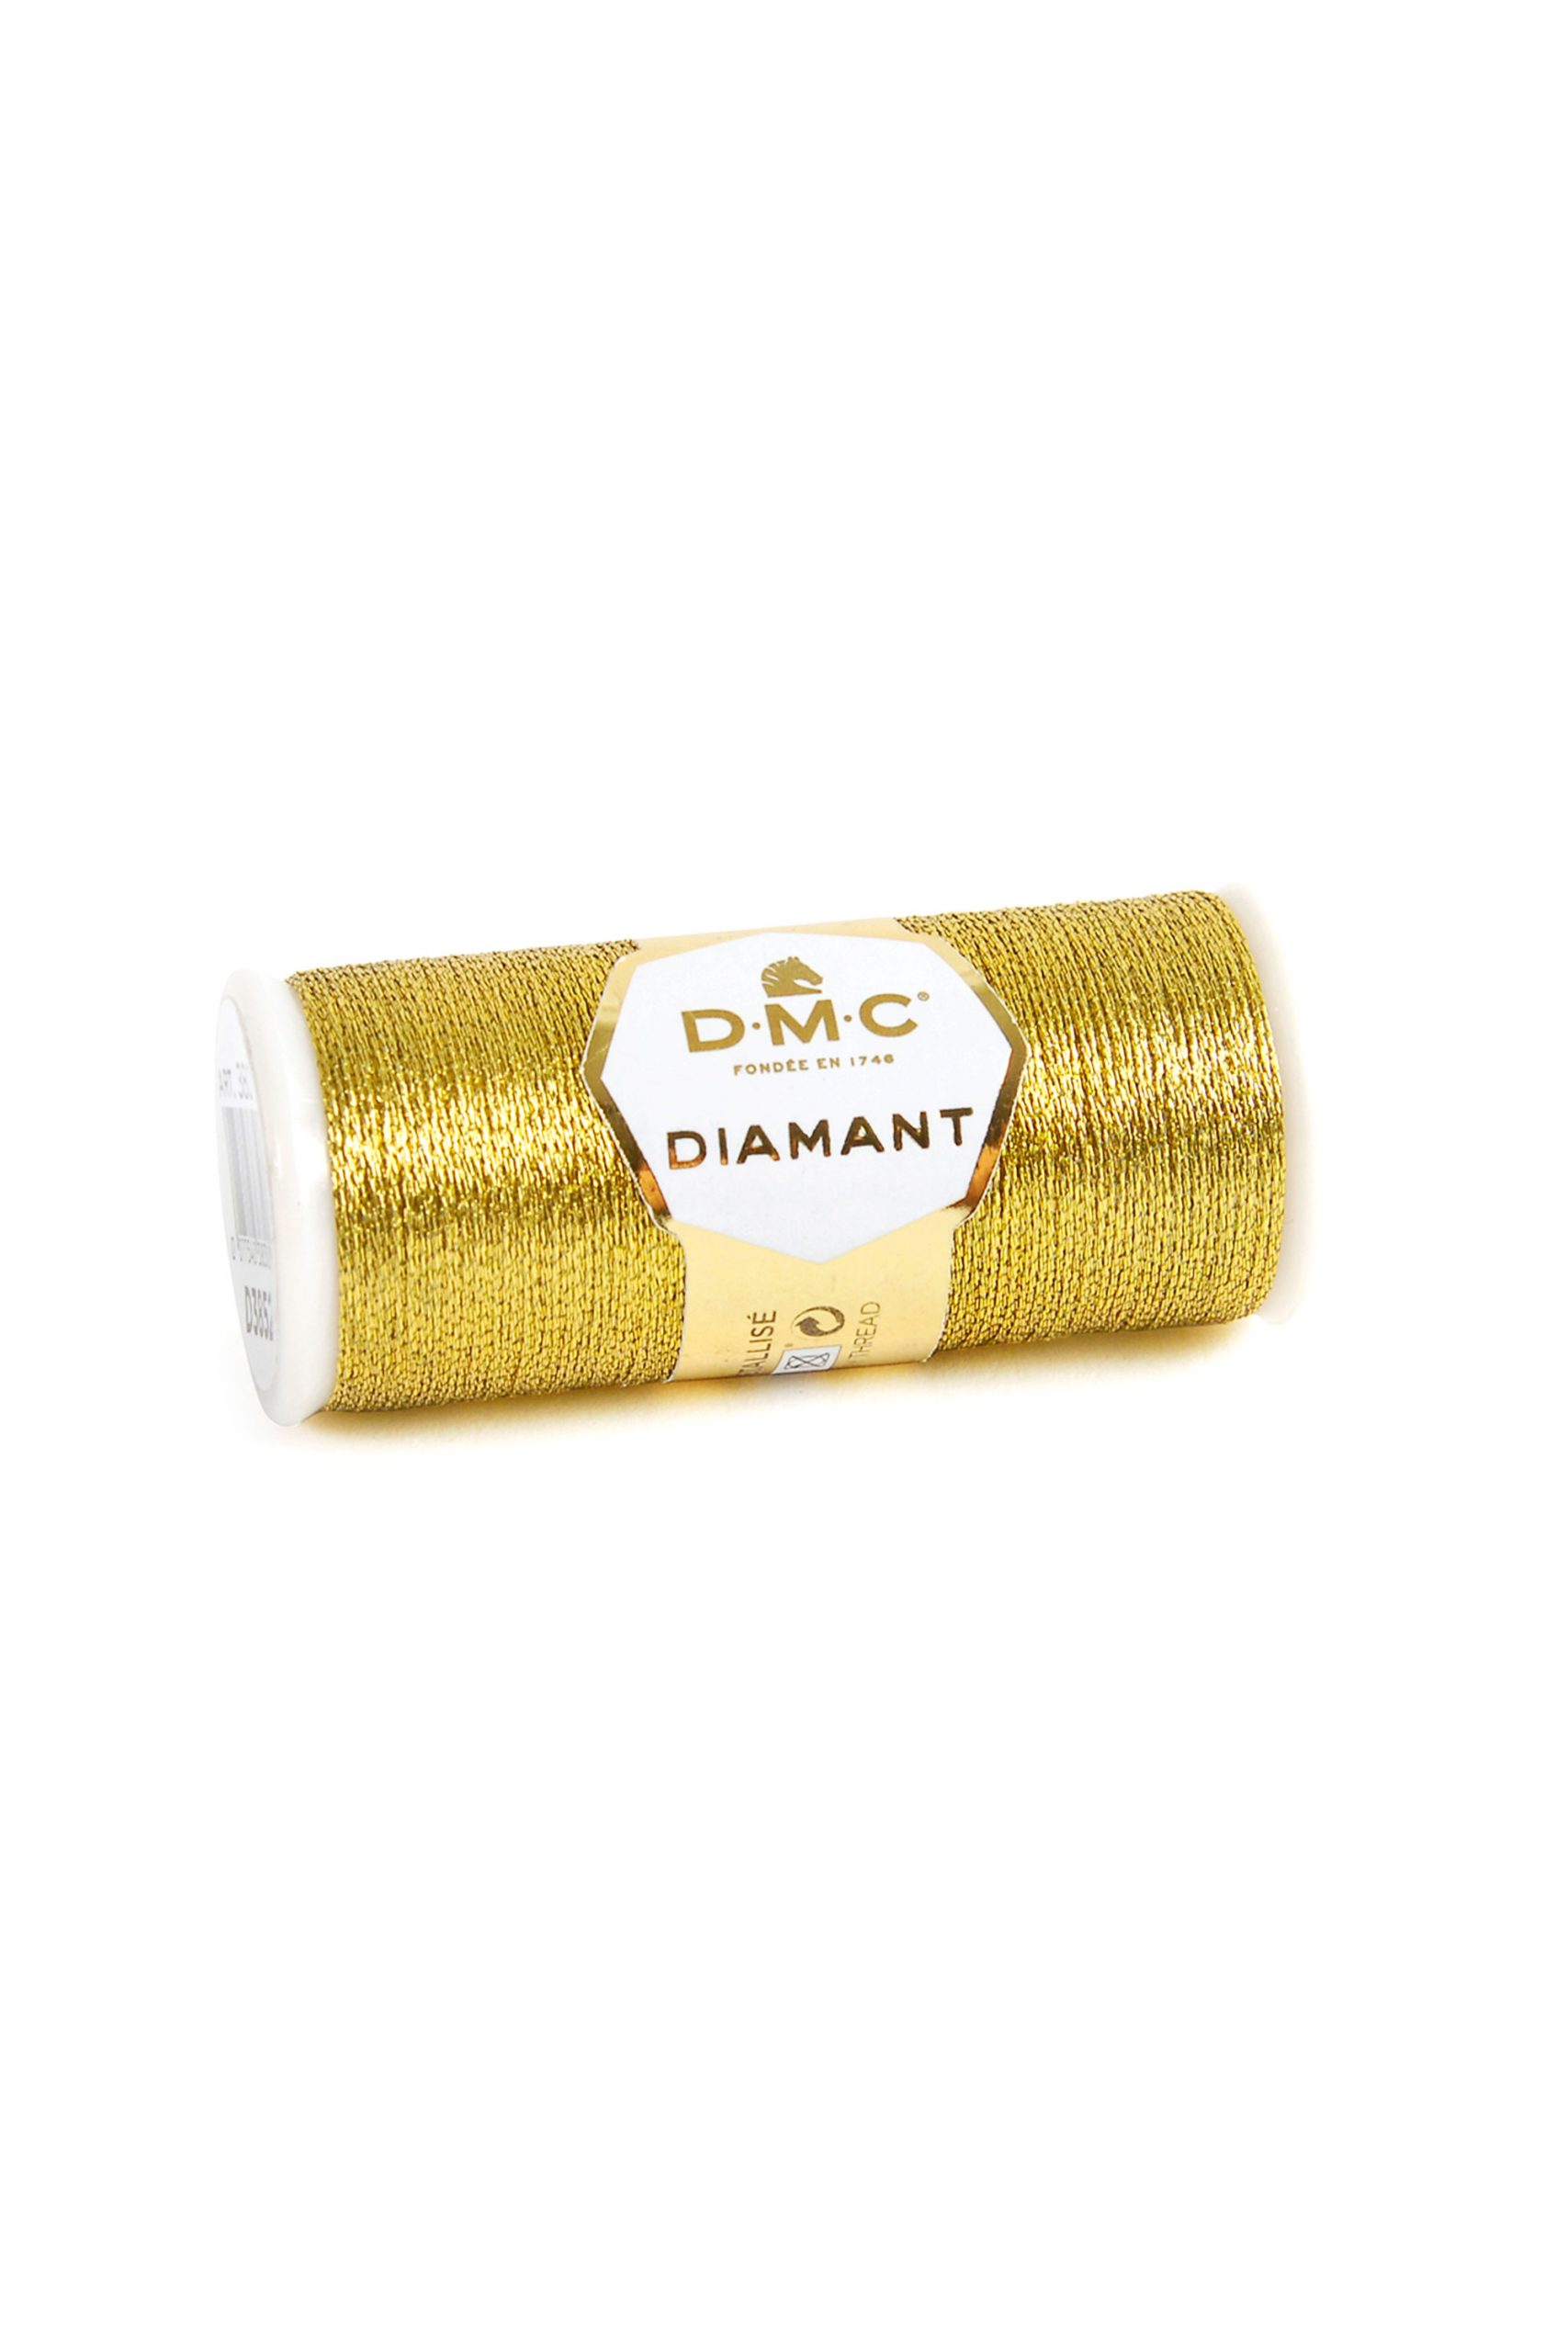 DMC Diamant - D3852